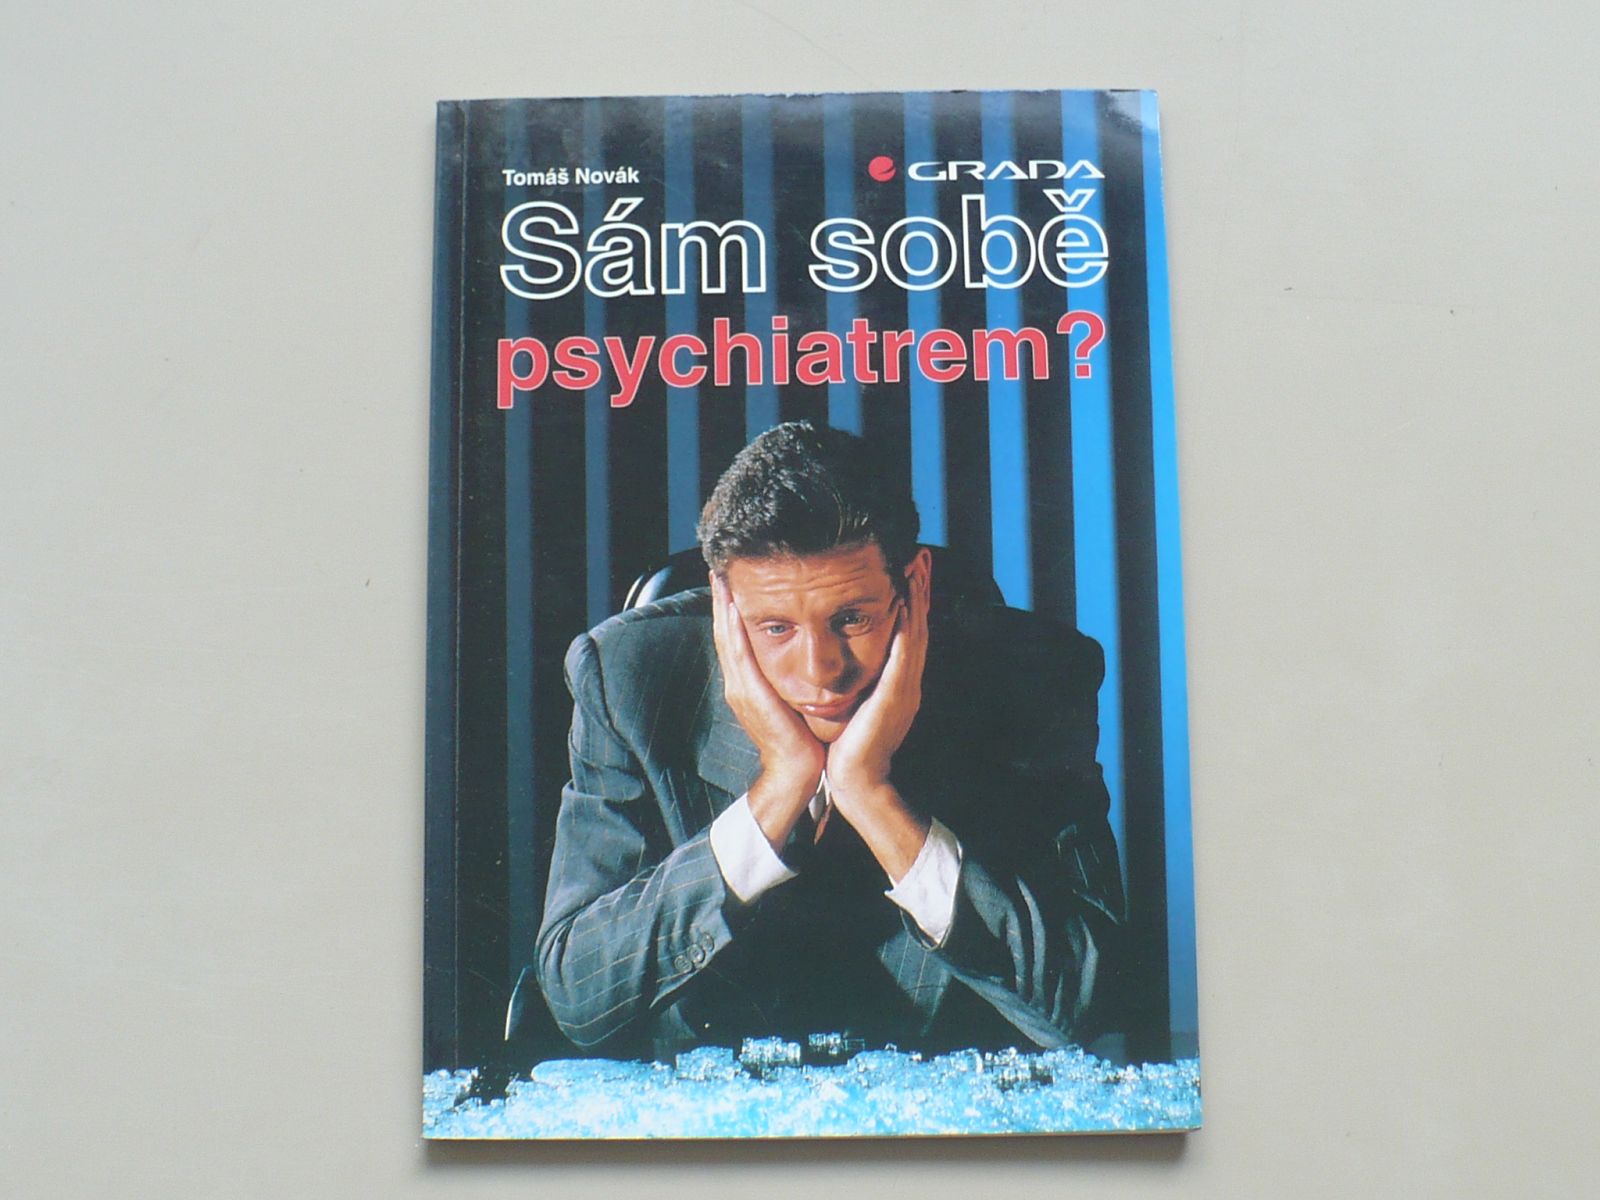 Tomáš Novák - Sám sobě psychiatrem? (1995)